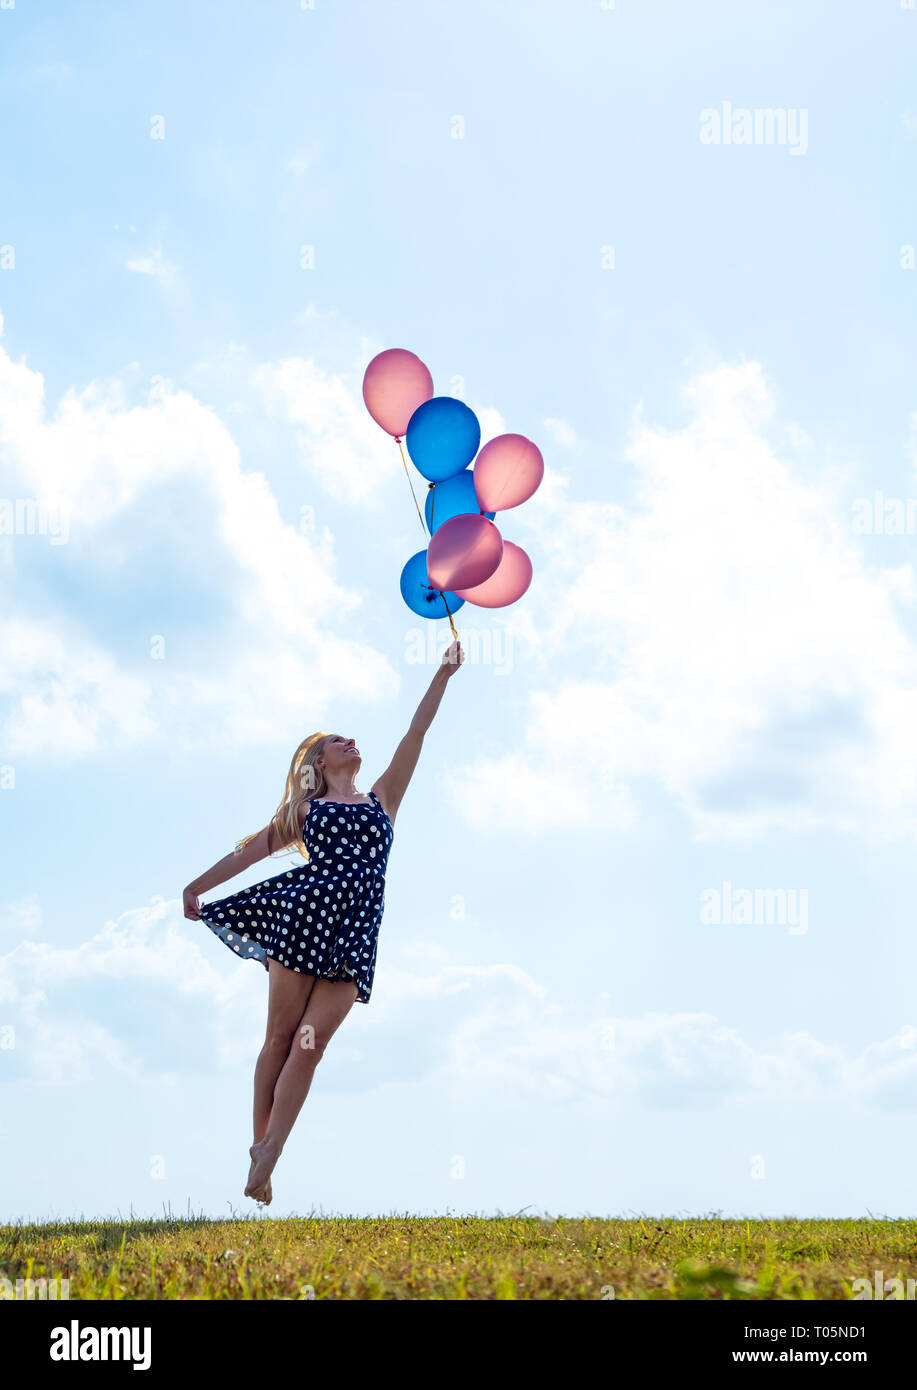 Female ballet dancer holding balloons flying away Stock Photo - Alamy